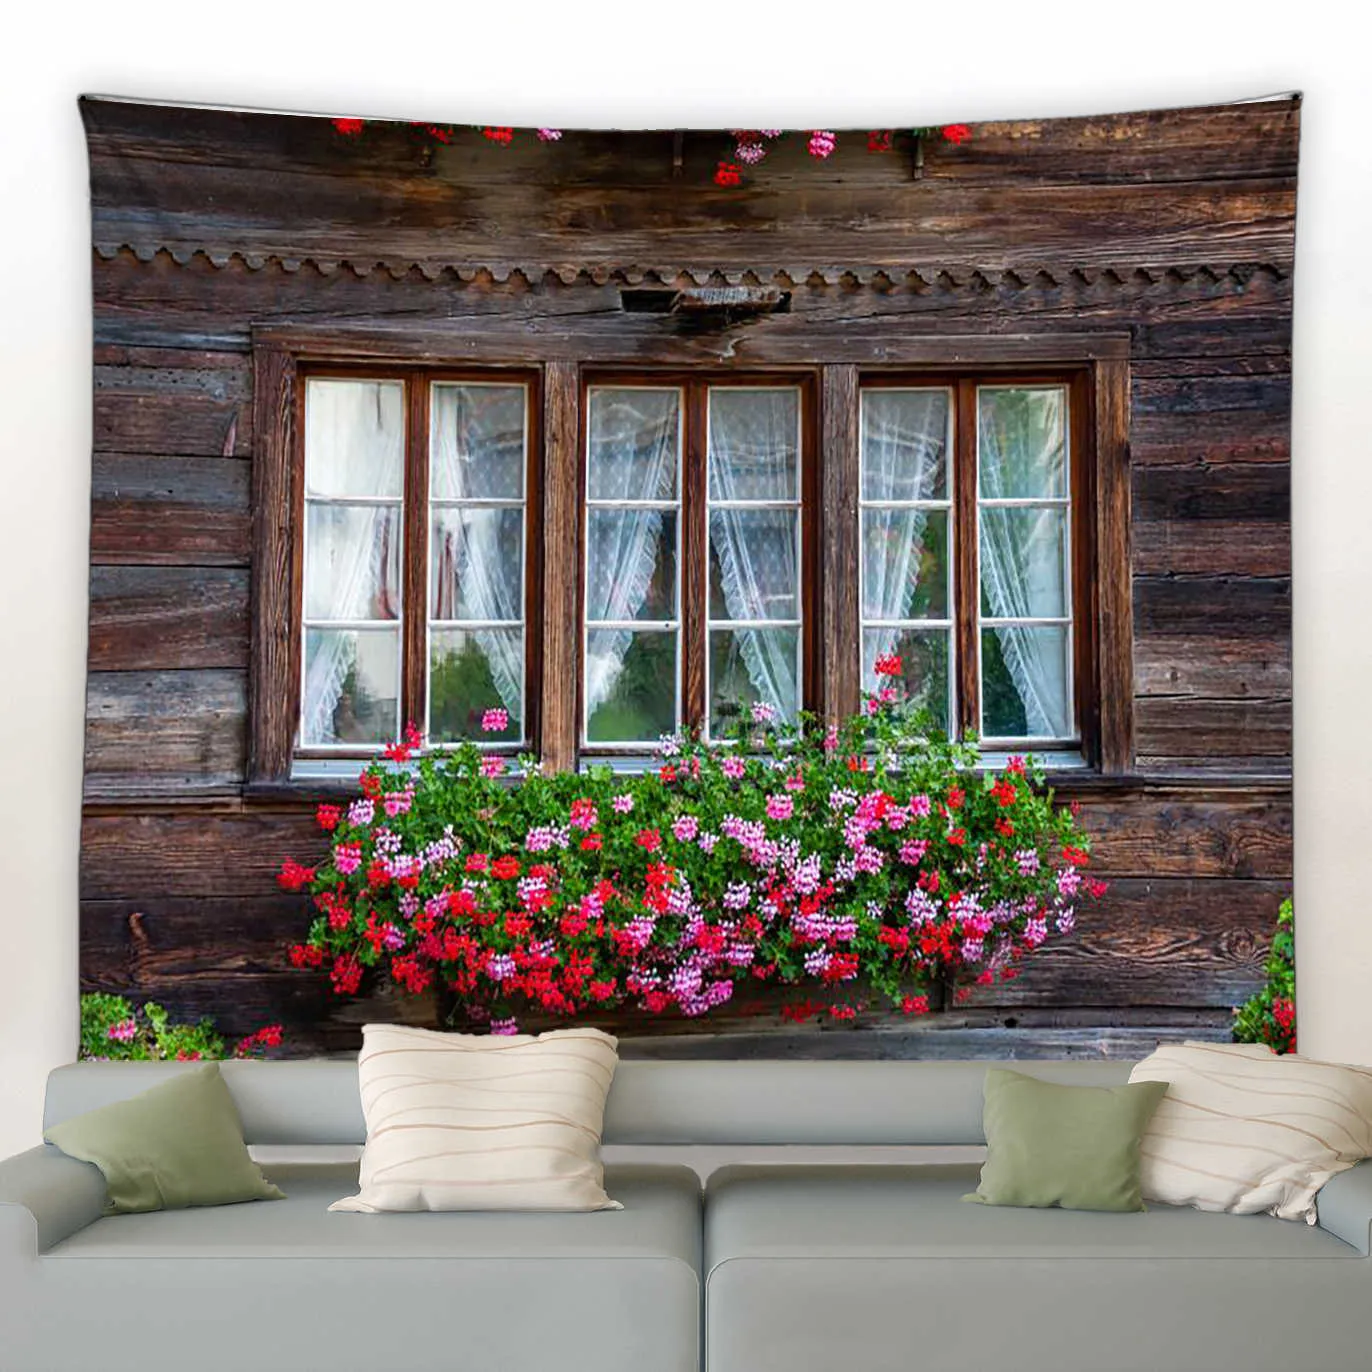 태피스트리 울타리 분홍색 꽃 태피스트리 창 꽃 아치 정원 공원 자연 식물 벽 벽 매달려 현대 홈 거실 안뜰 장식